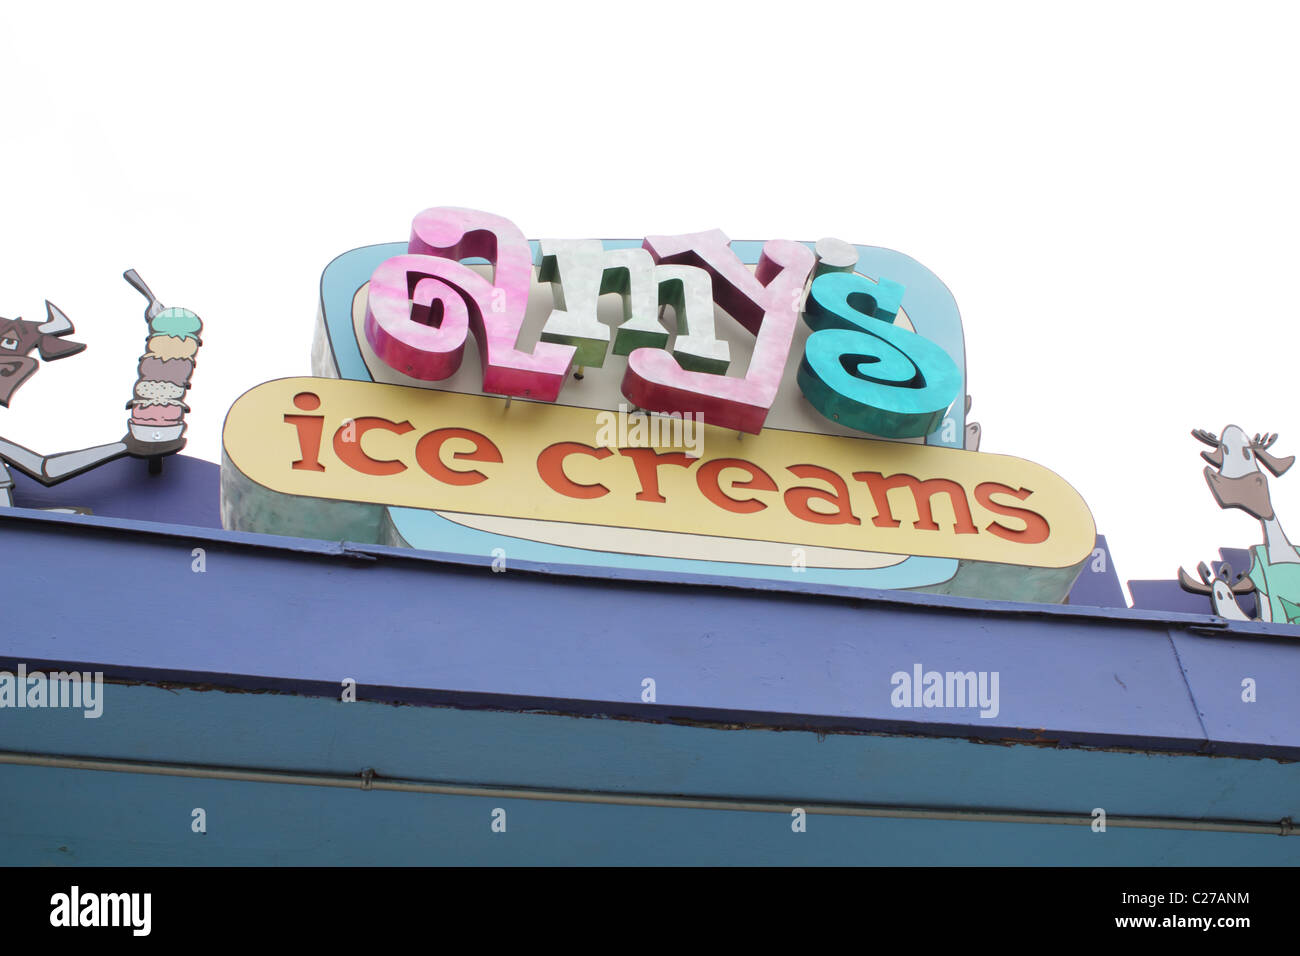 Amy's ice cream sign Stock Photo